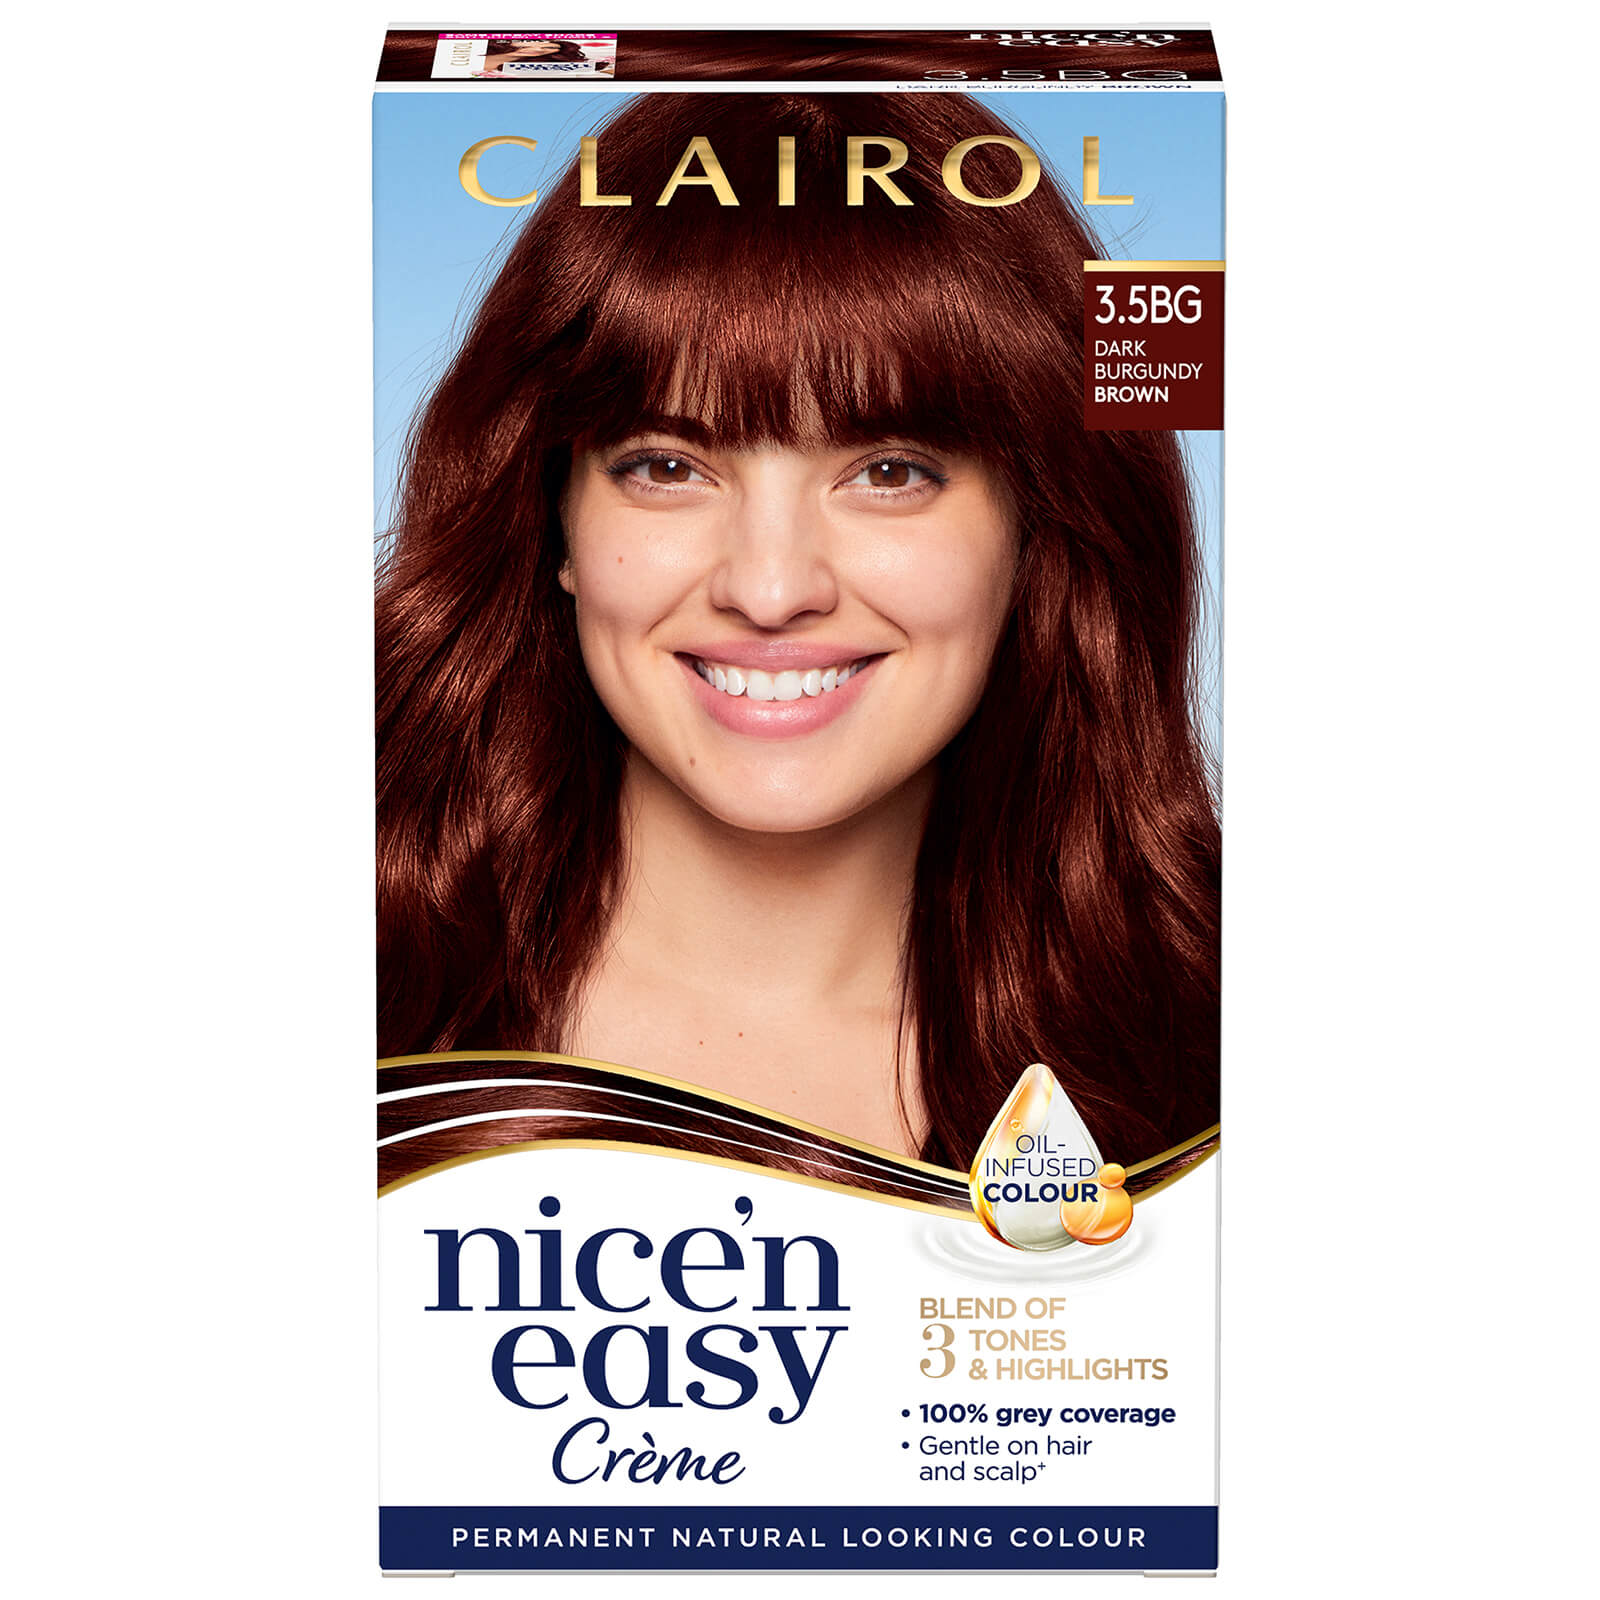 Clairol Nice' n Easy Crème Natural Looking Oil Infused Permanent Hair Dye 177ml (Various Shades) - 3.5BG Dark Burgundy Brown